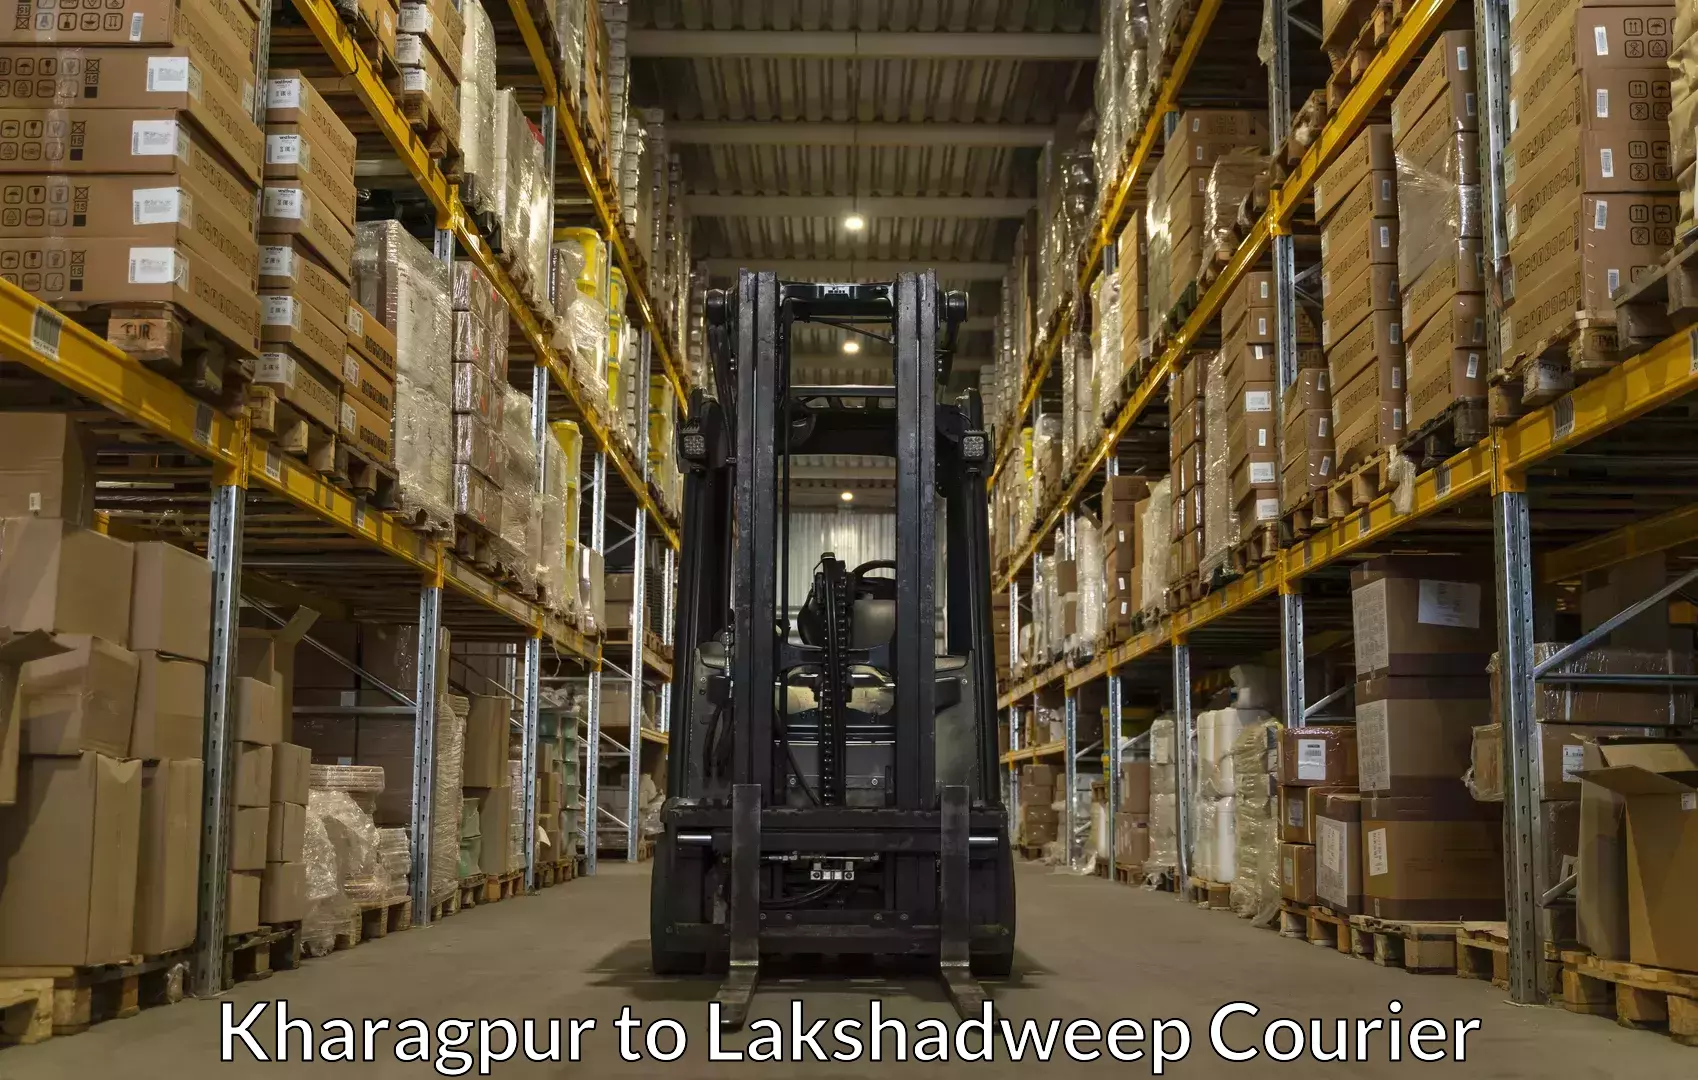 Baggage transport scheduler Kharagpur to Lakshadweep